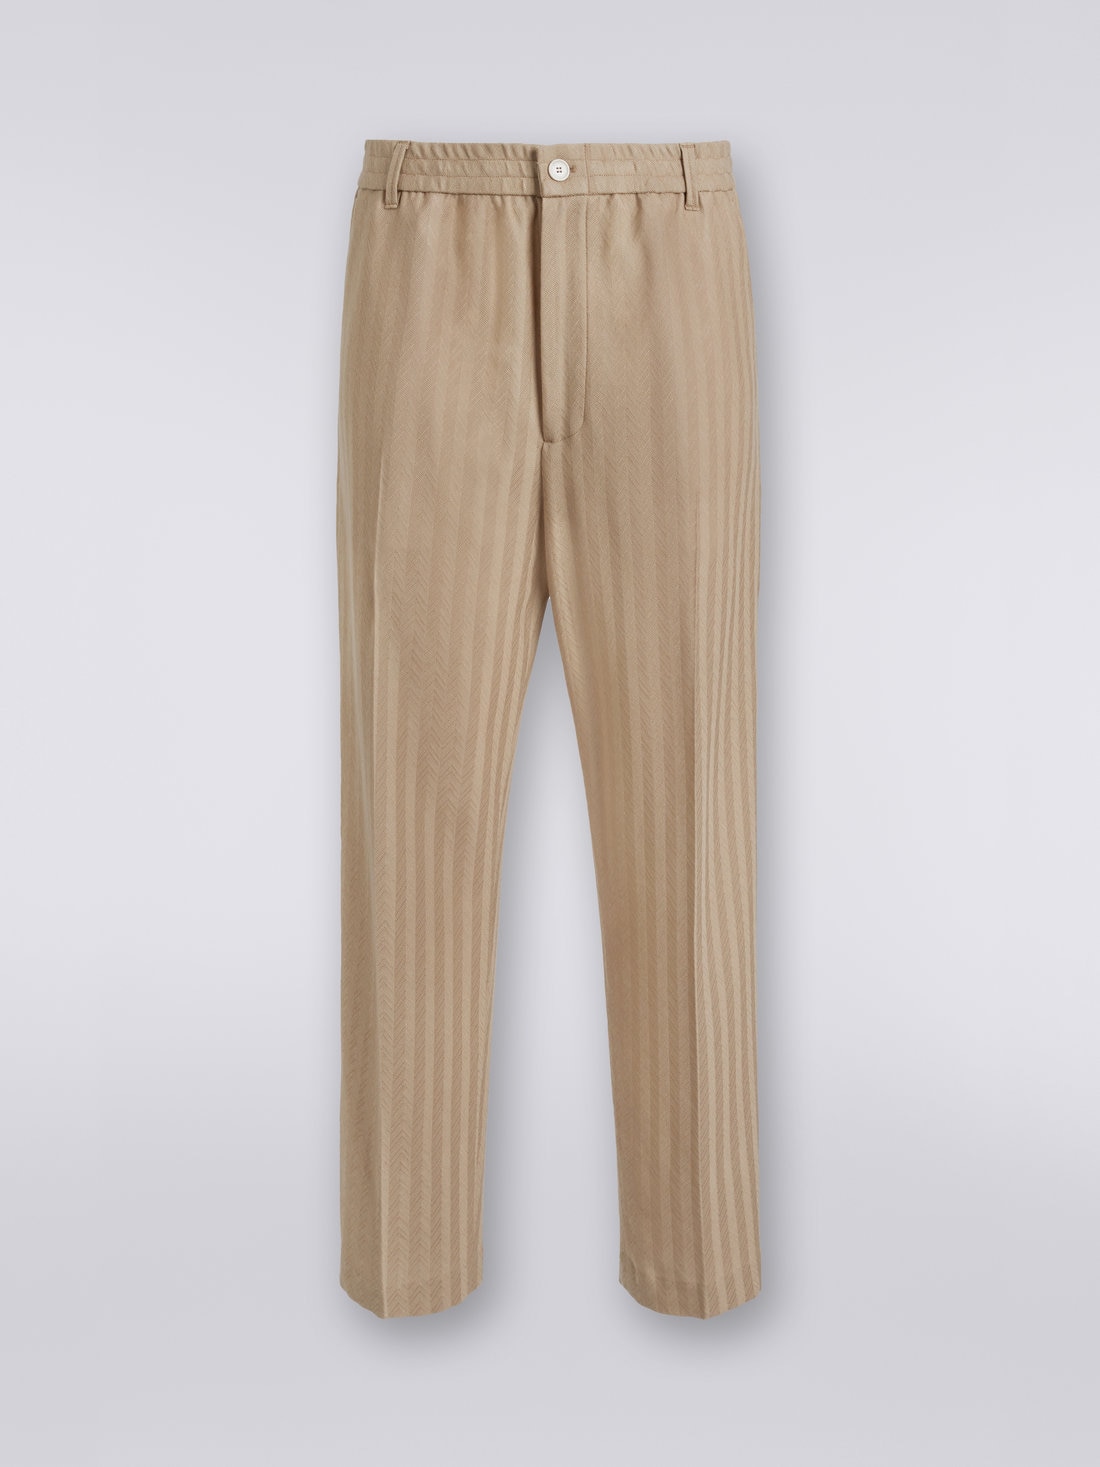 Pantaloni in viscosa e cotone chevron con piega stirata, Bianco  - US23SI00BR00L051307 - 0